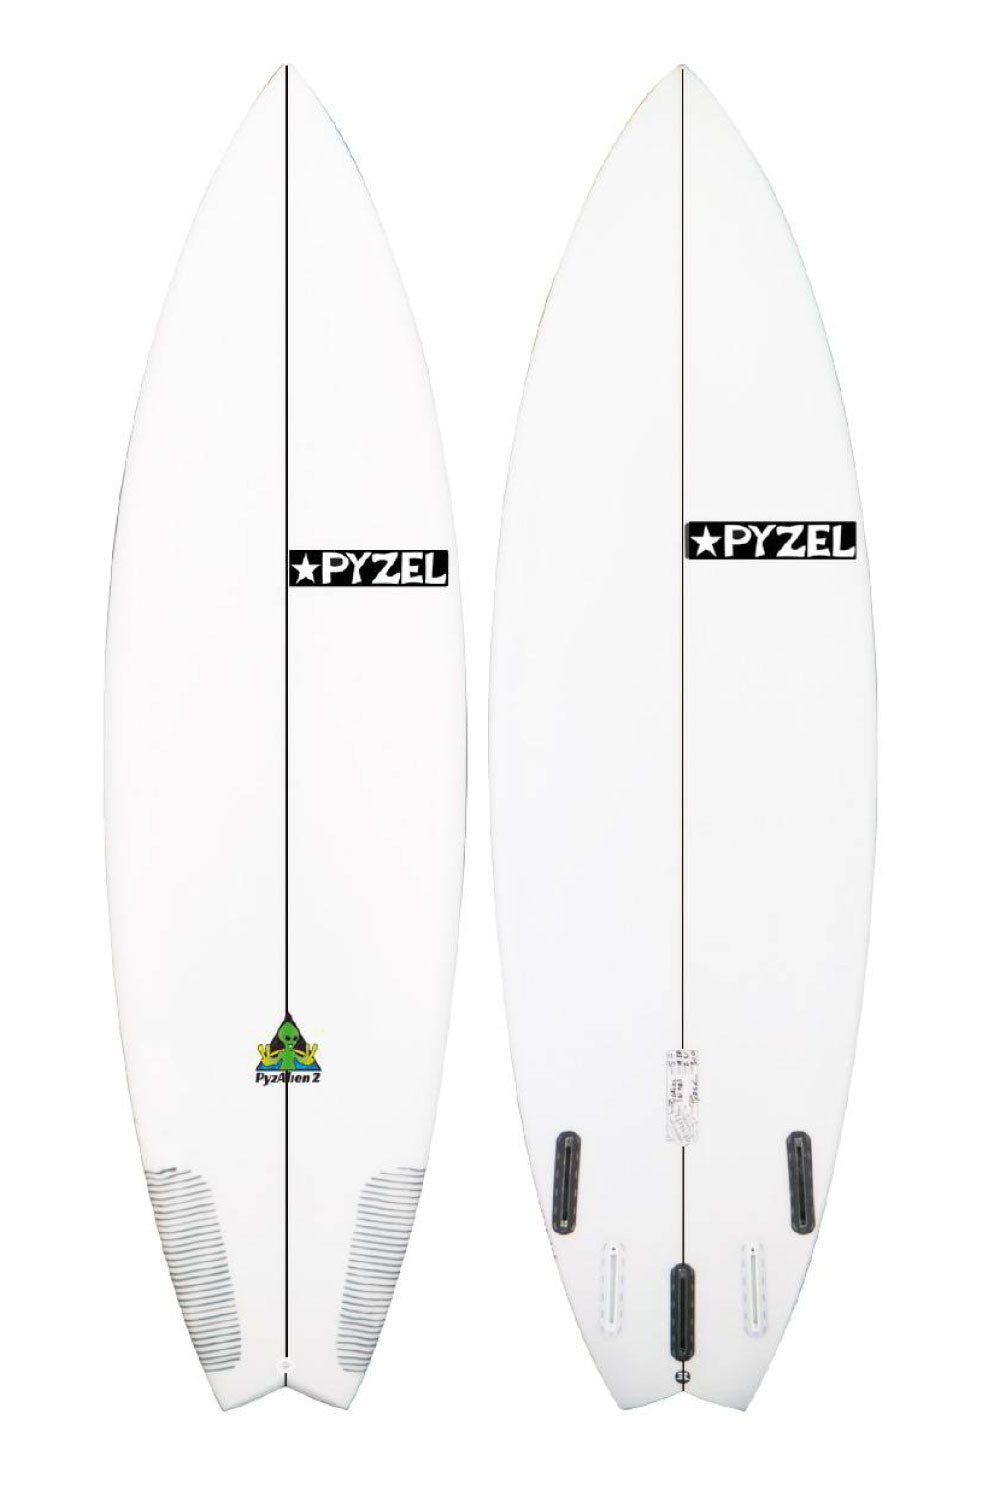 Pyzel PyzAlien 2 Surfboard